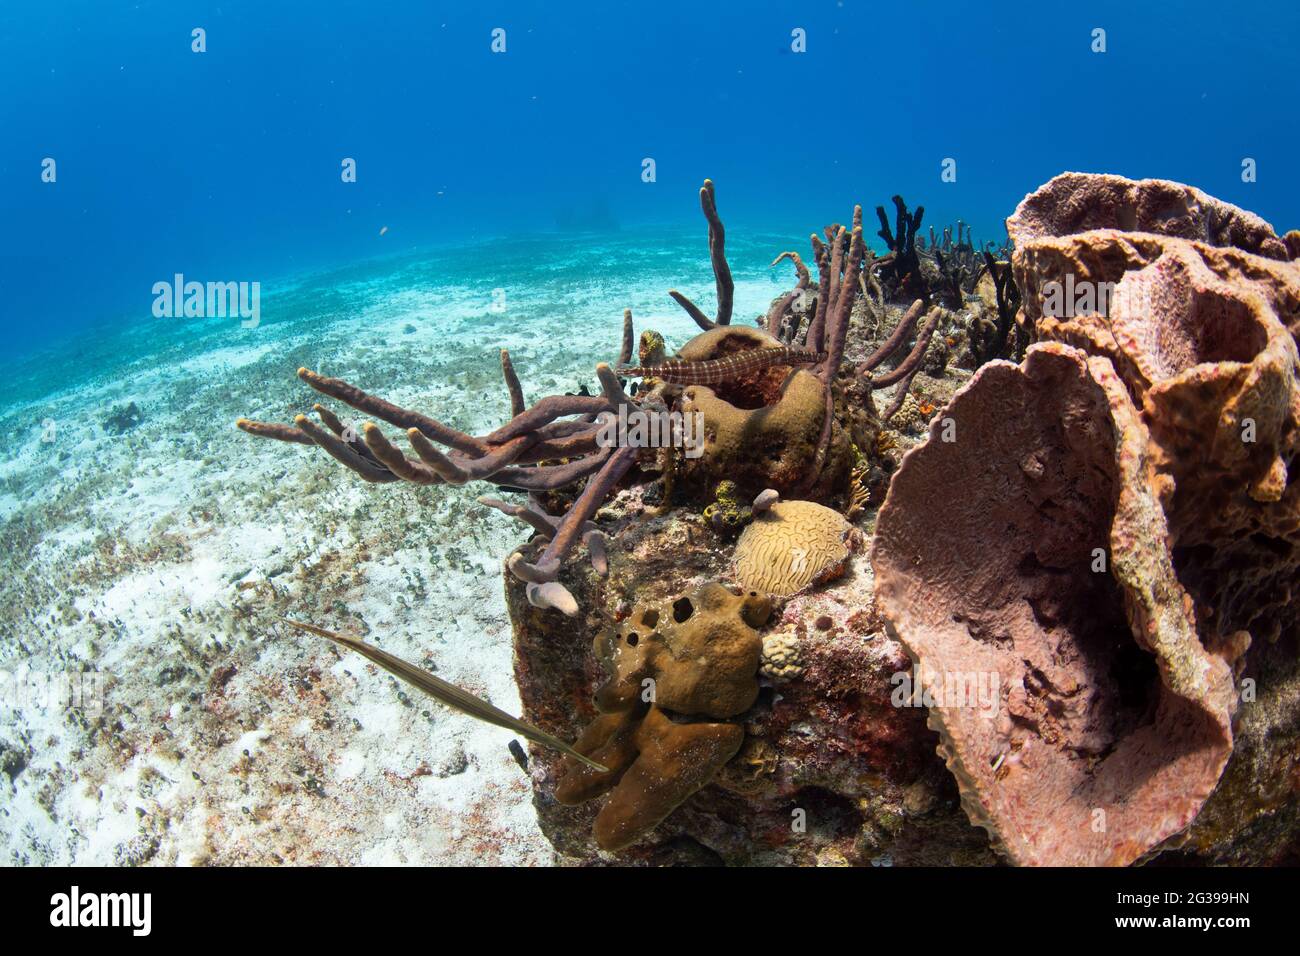 Corail tropical paysage sous-marin. Plongée sous-marine à Cozumel Mexique. Banque D'Images